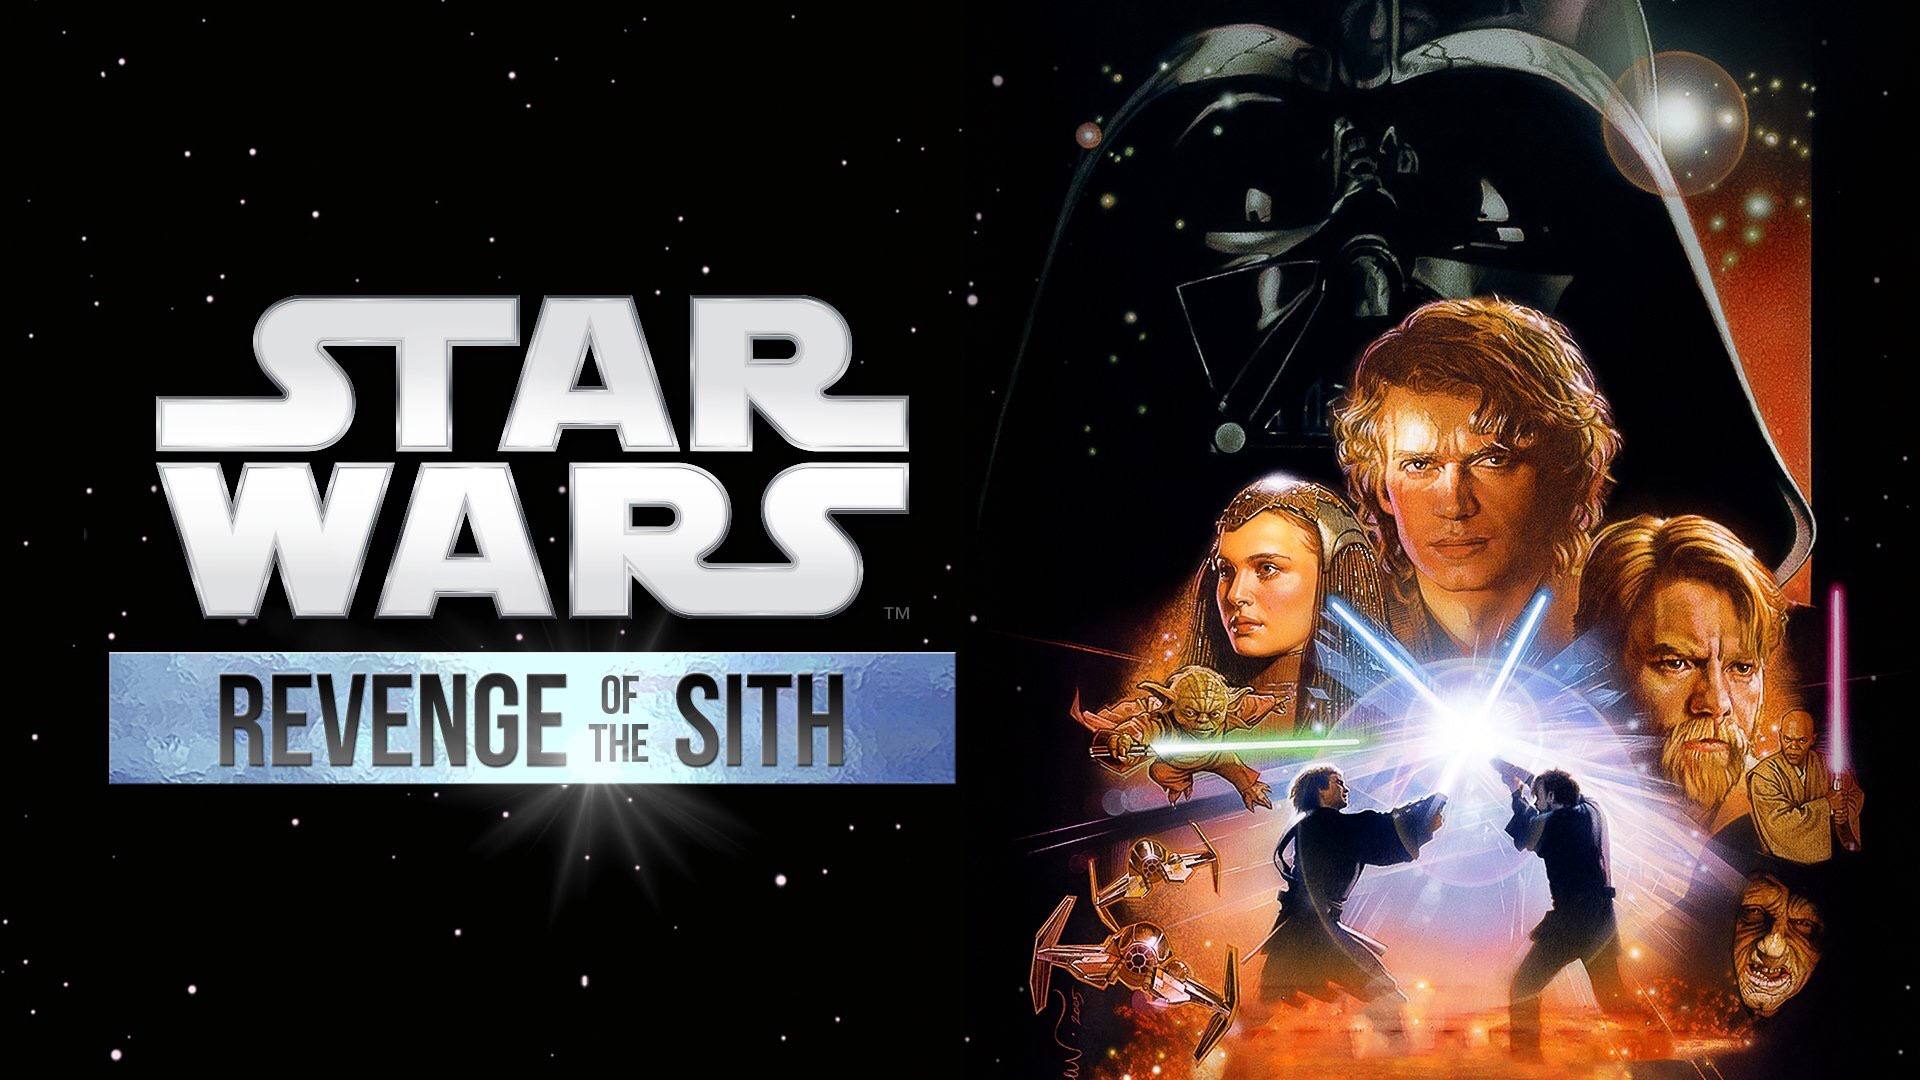 Star Wars Episode Iii Revenge Of The Sith 05 Filmnerd